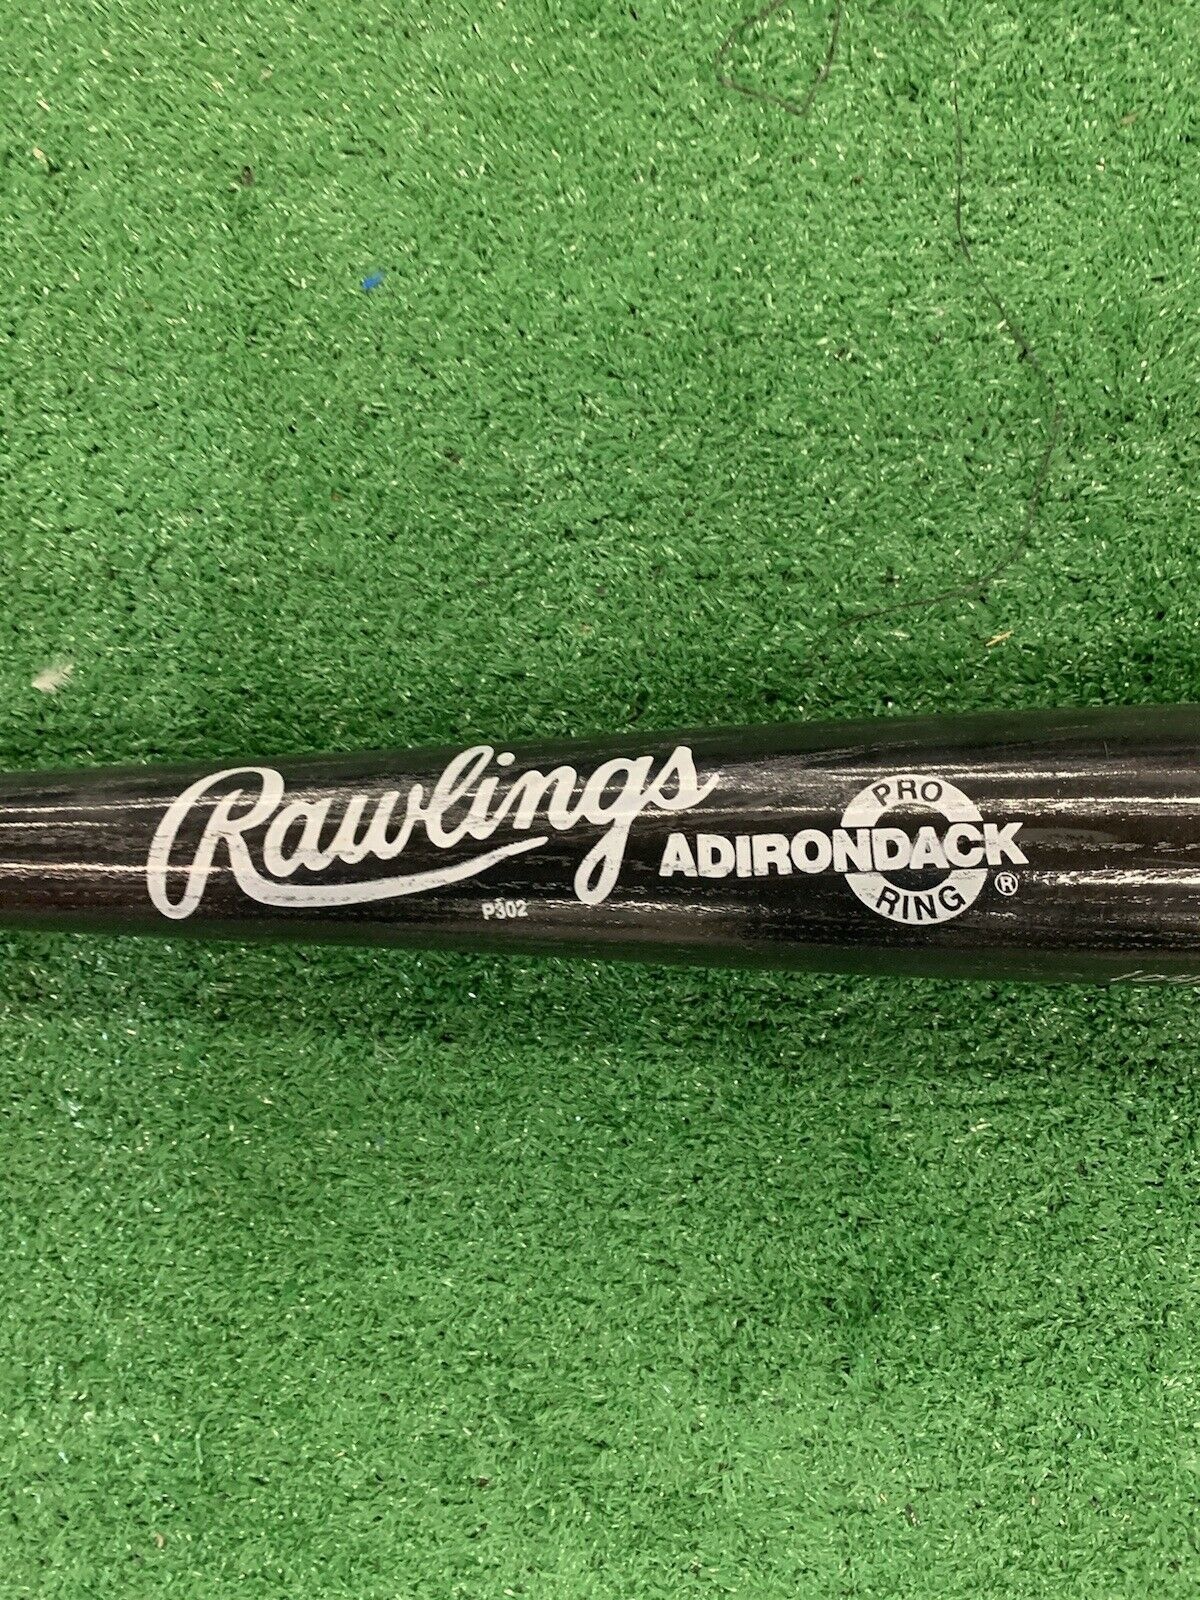 Baseball bat, used by Rickey Henderson, Oakland A's